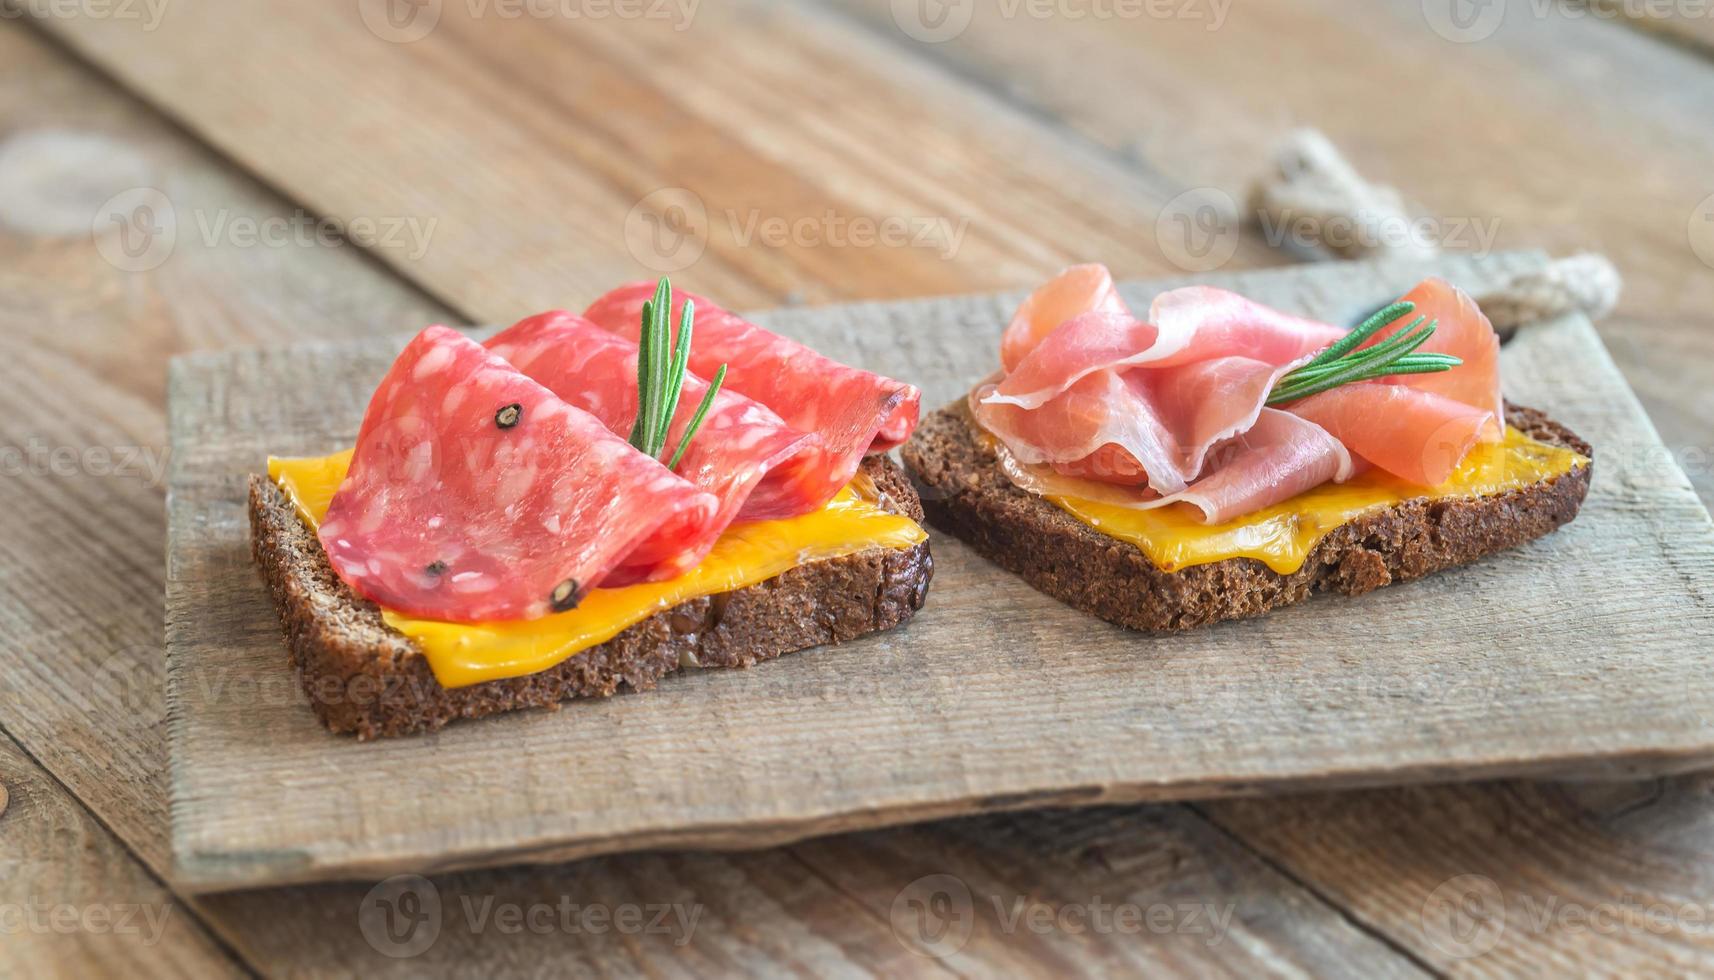 Sándwiches españoles con salchichón y jamón foto